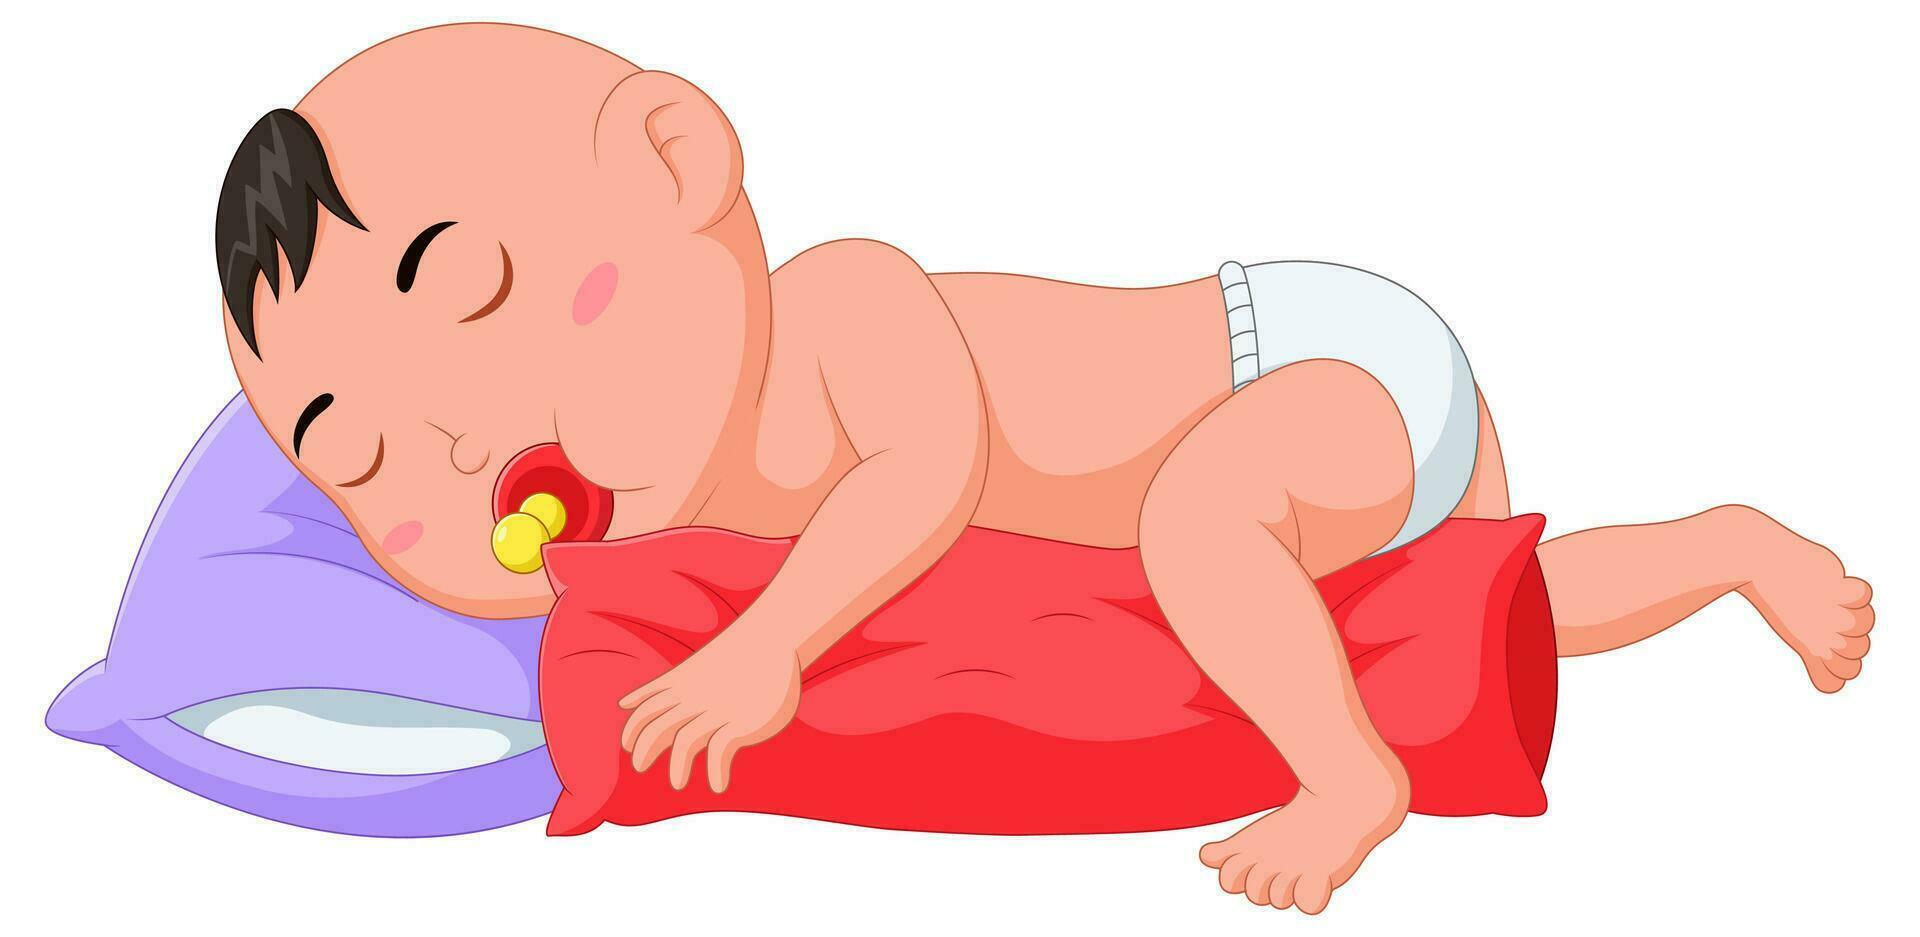 söt bebis sover medan kramas en kudde. vektor illustration